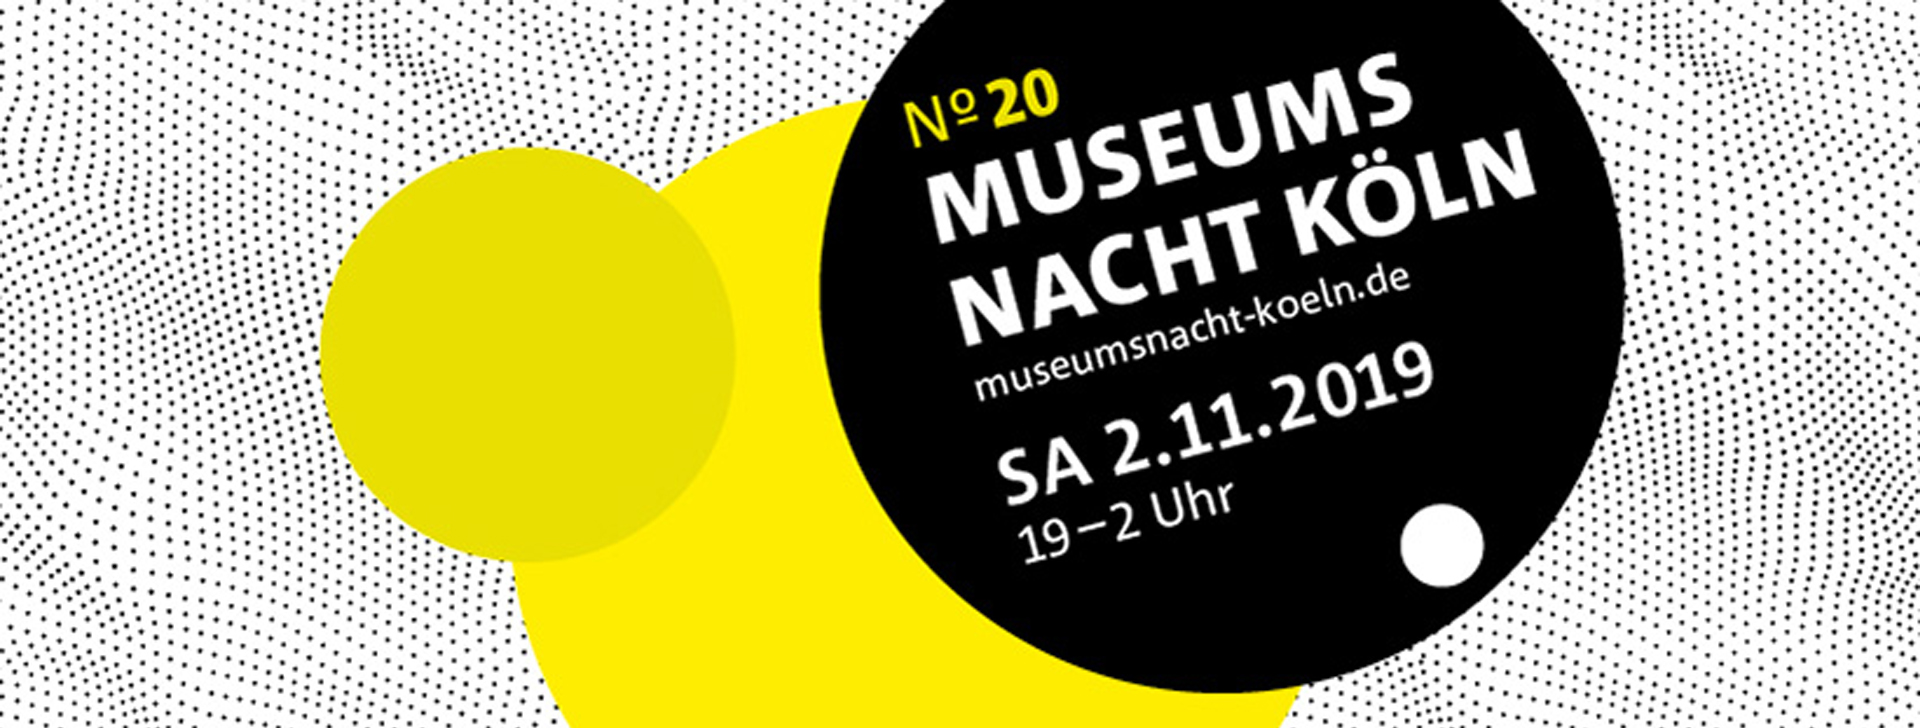 Museumsnacht Köln 2019 - Käthe Kollwitz Museum Köln 